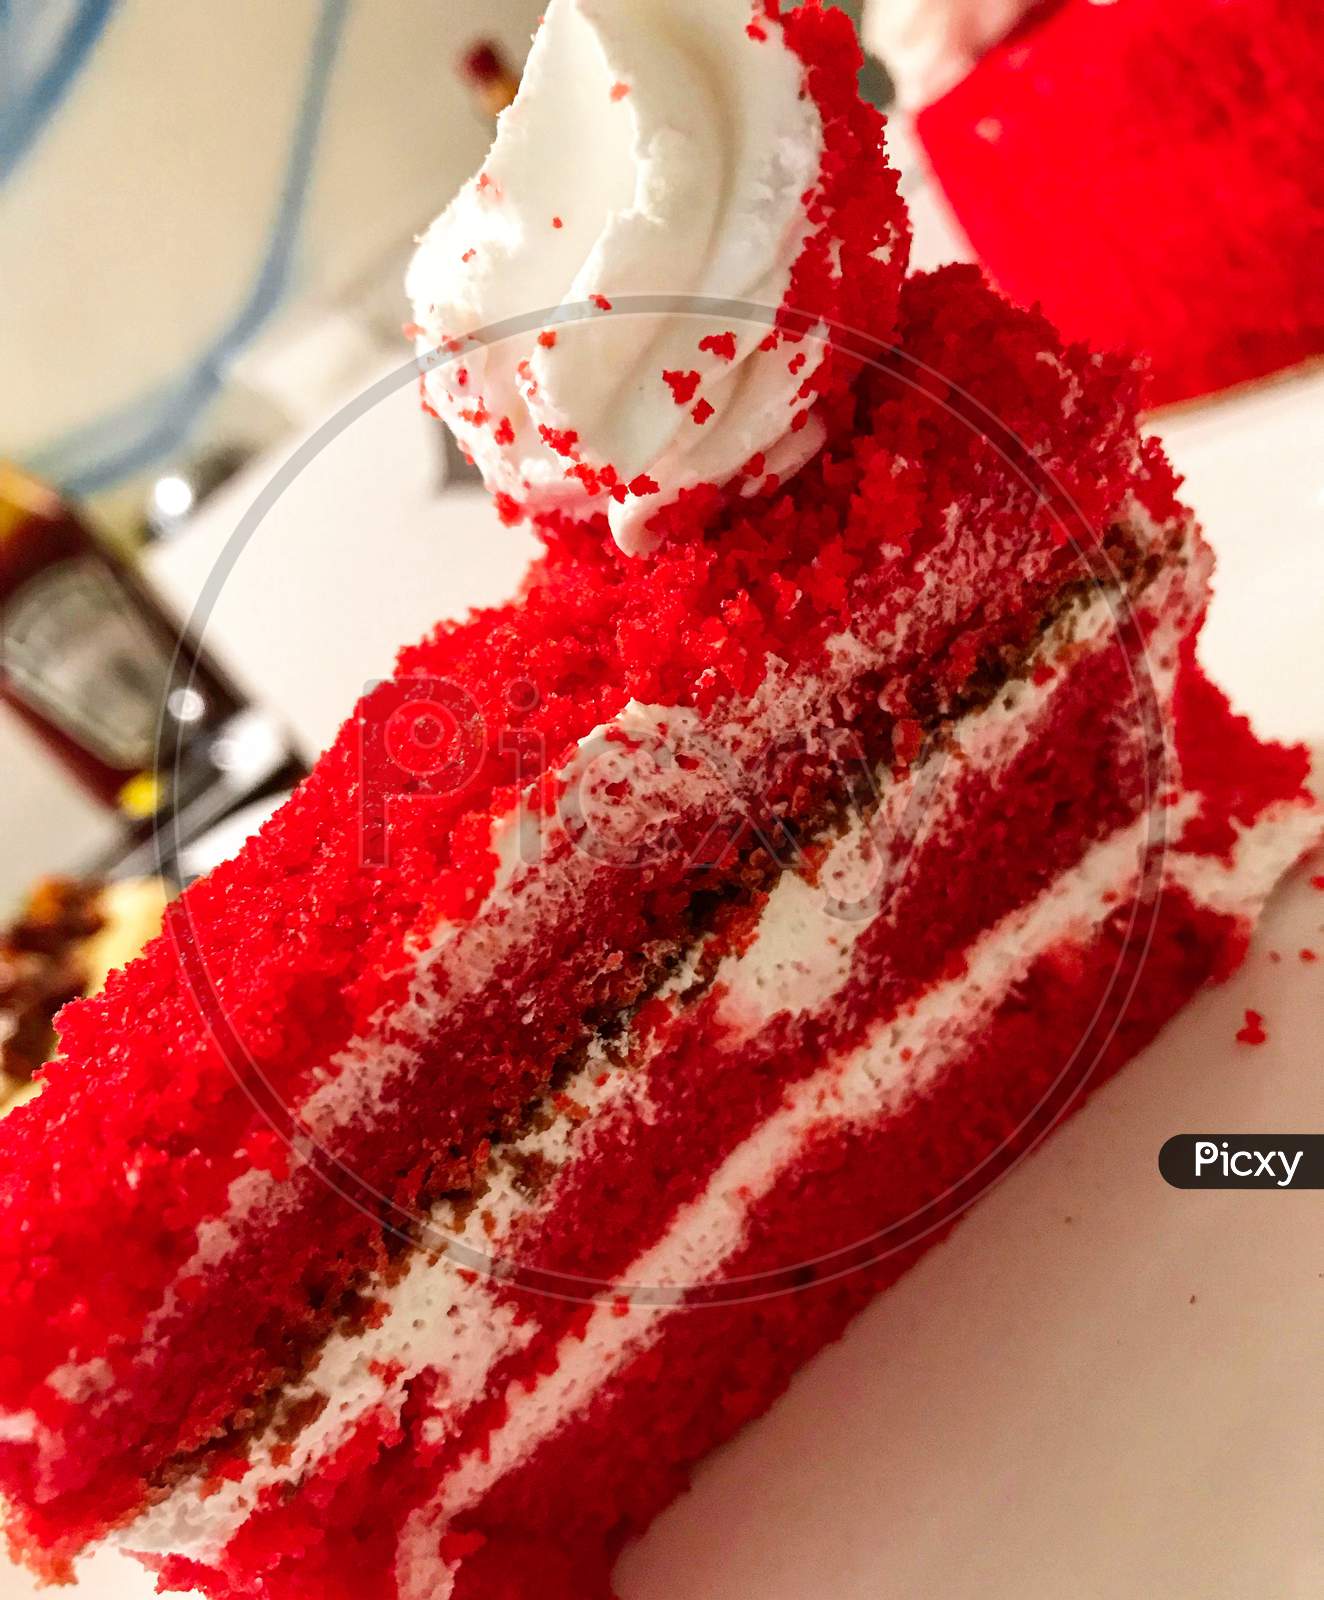 Red velvet cake, dessert.